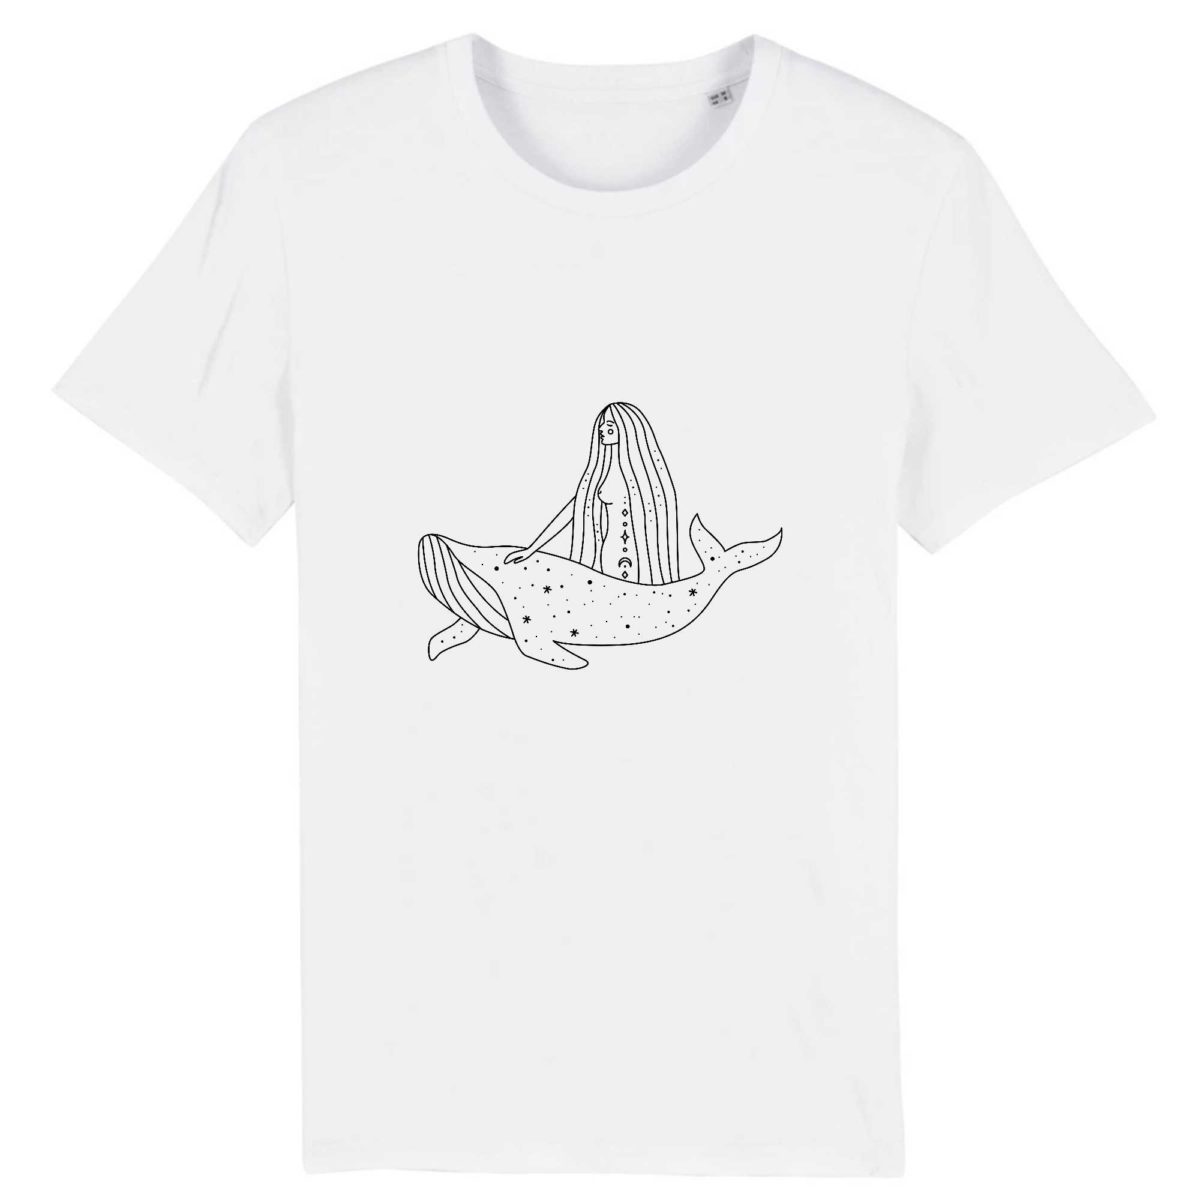 Baleine magique / T-shirt Unisexe - Coton BIO